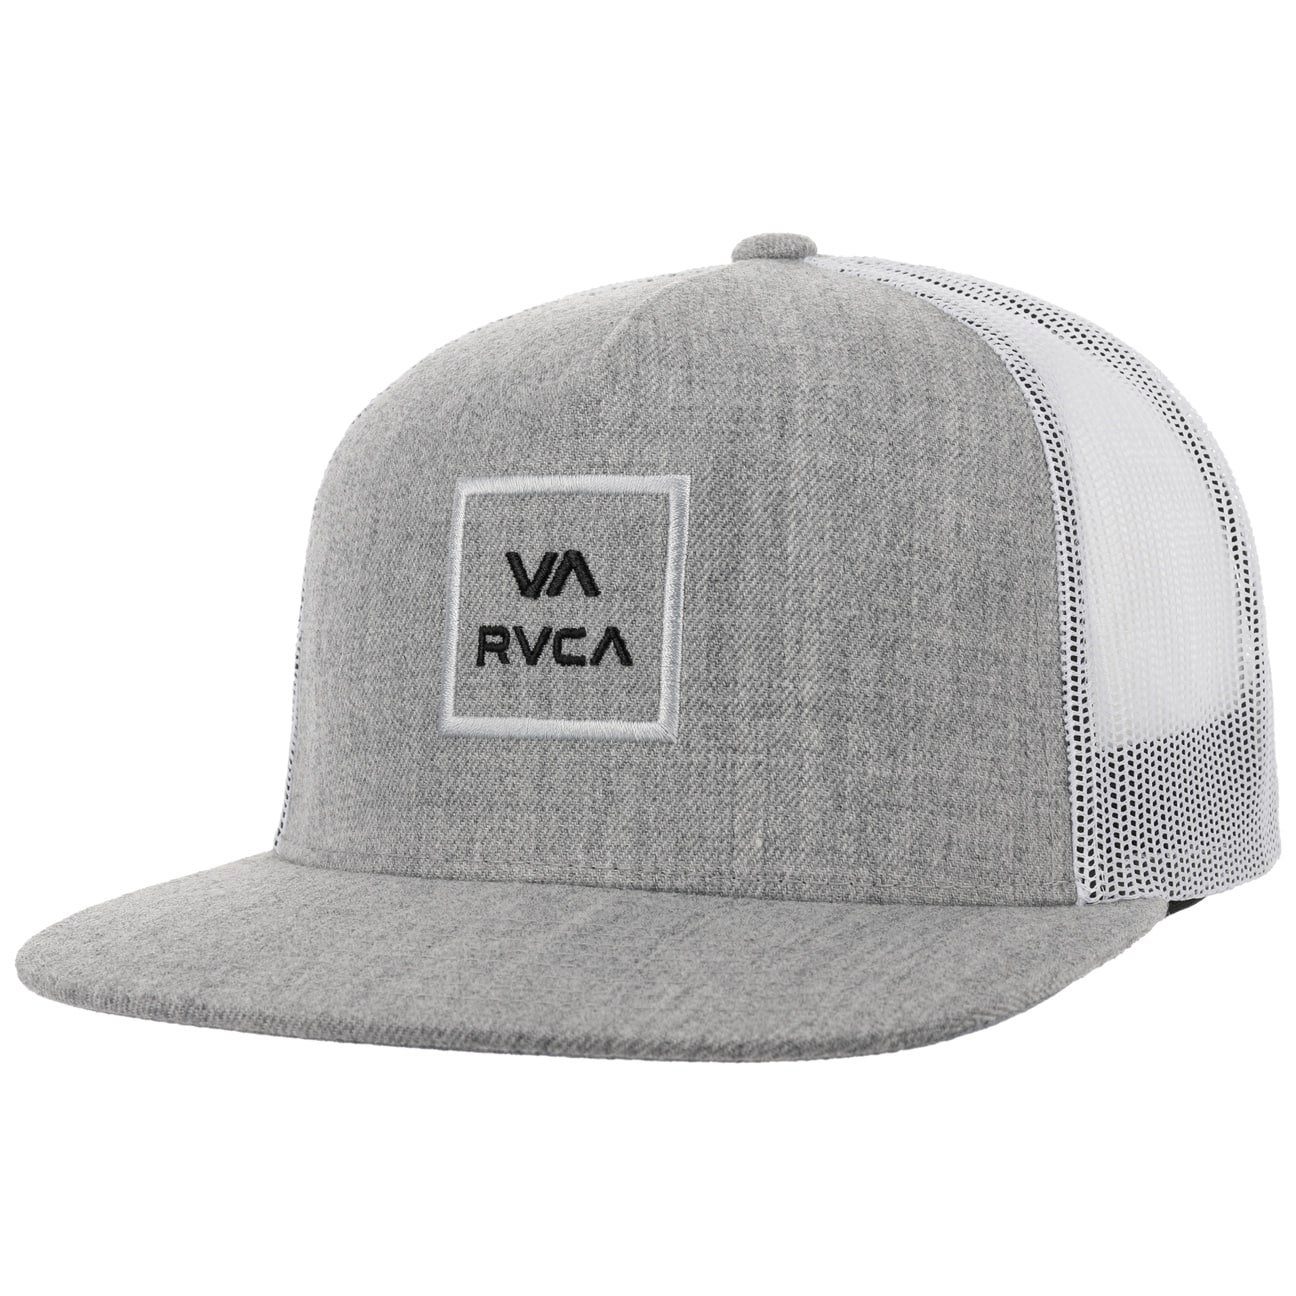 (1-St) Snapback grau RVCA Trucker Basecap Cap